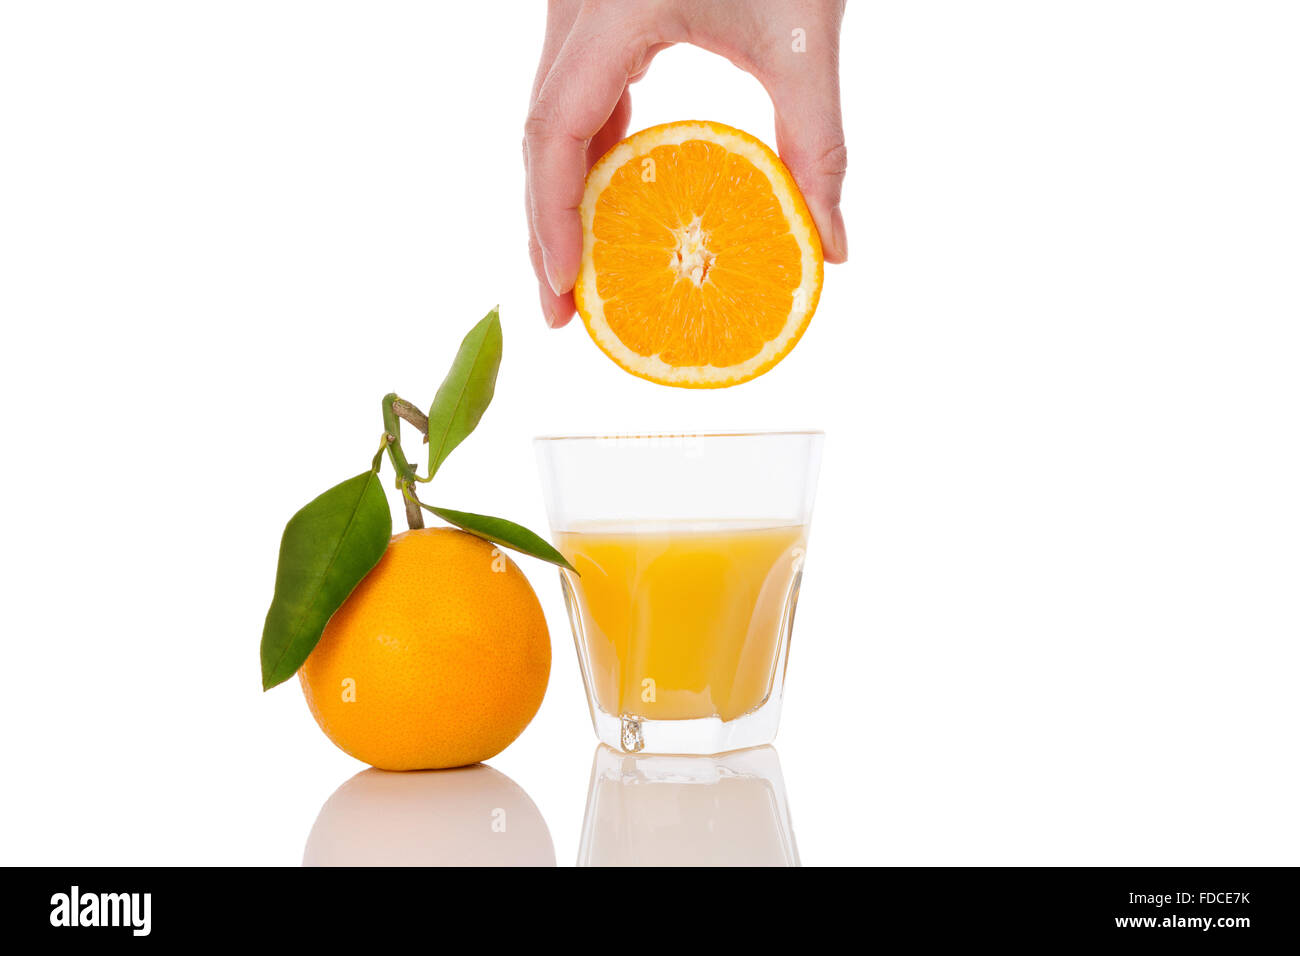 Spremere il succo d'arancia immagini e fotografie stock ad alta risoluzione  - Pagina 5 - Alamy